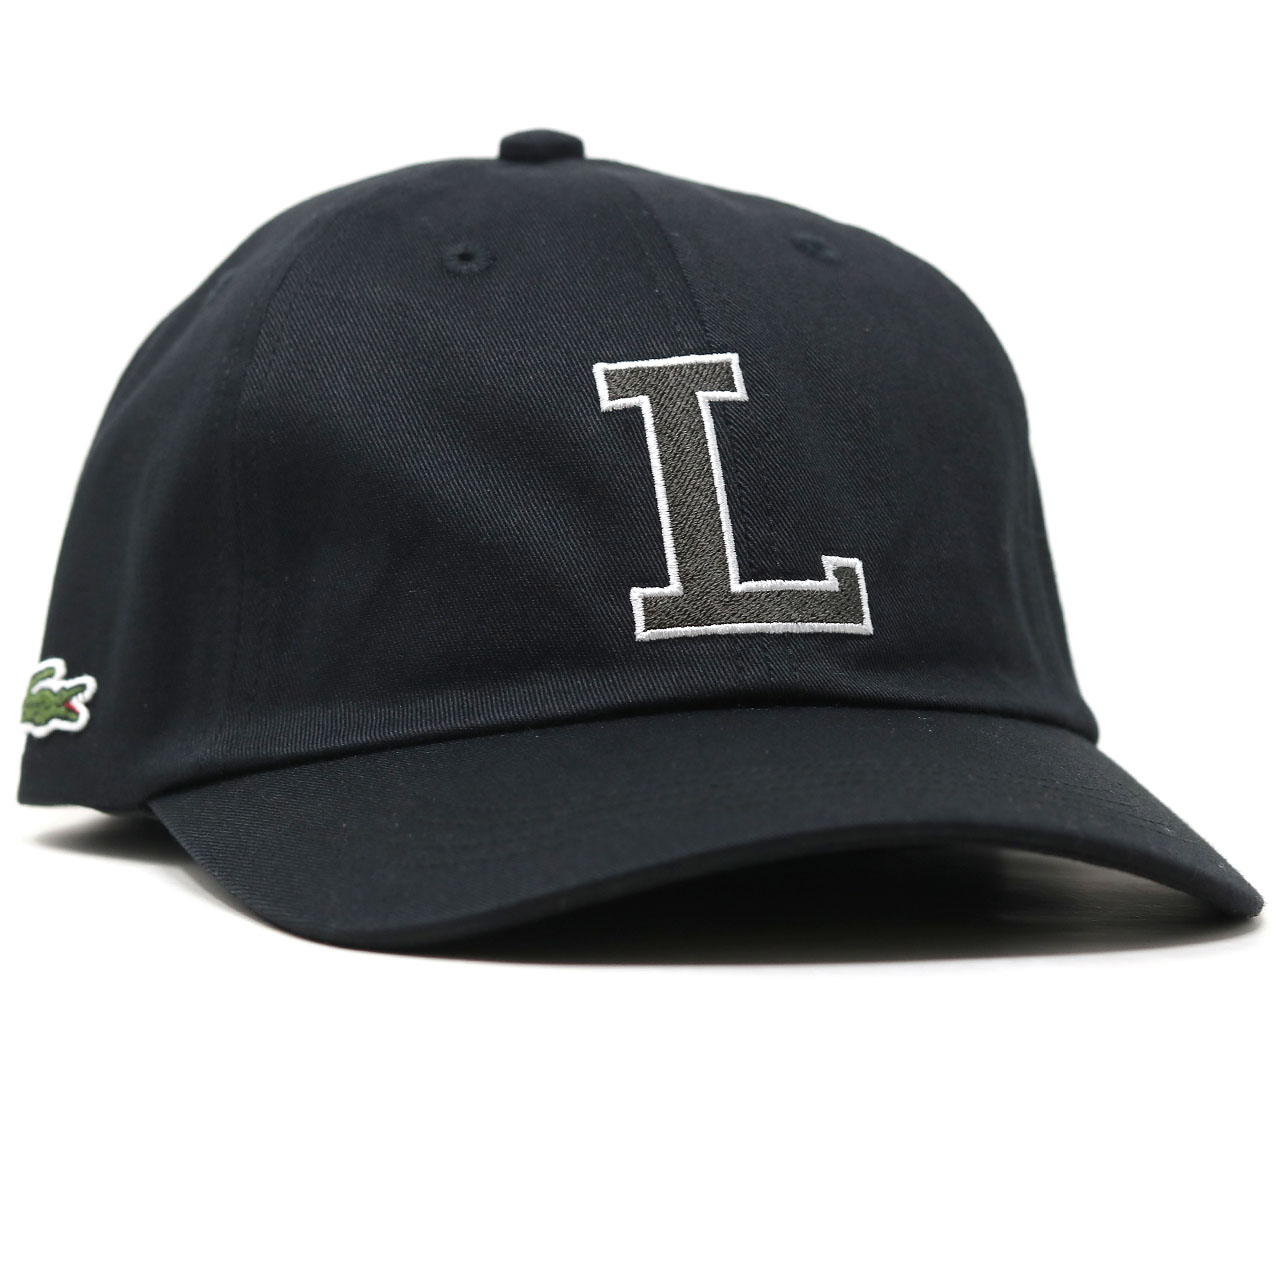 ラコステ キャップ メンズ LACOSTE ロゴ レディース キャップ コットン ツイル 帽子 LACOSTE キャップ フリーサイズ 調整可  ロゴキャップ 日本製 全5色